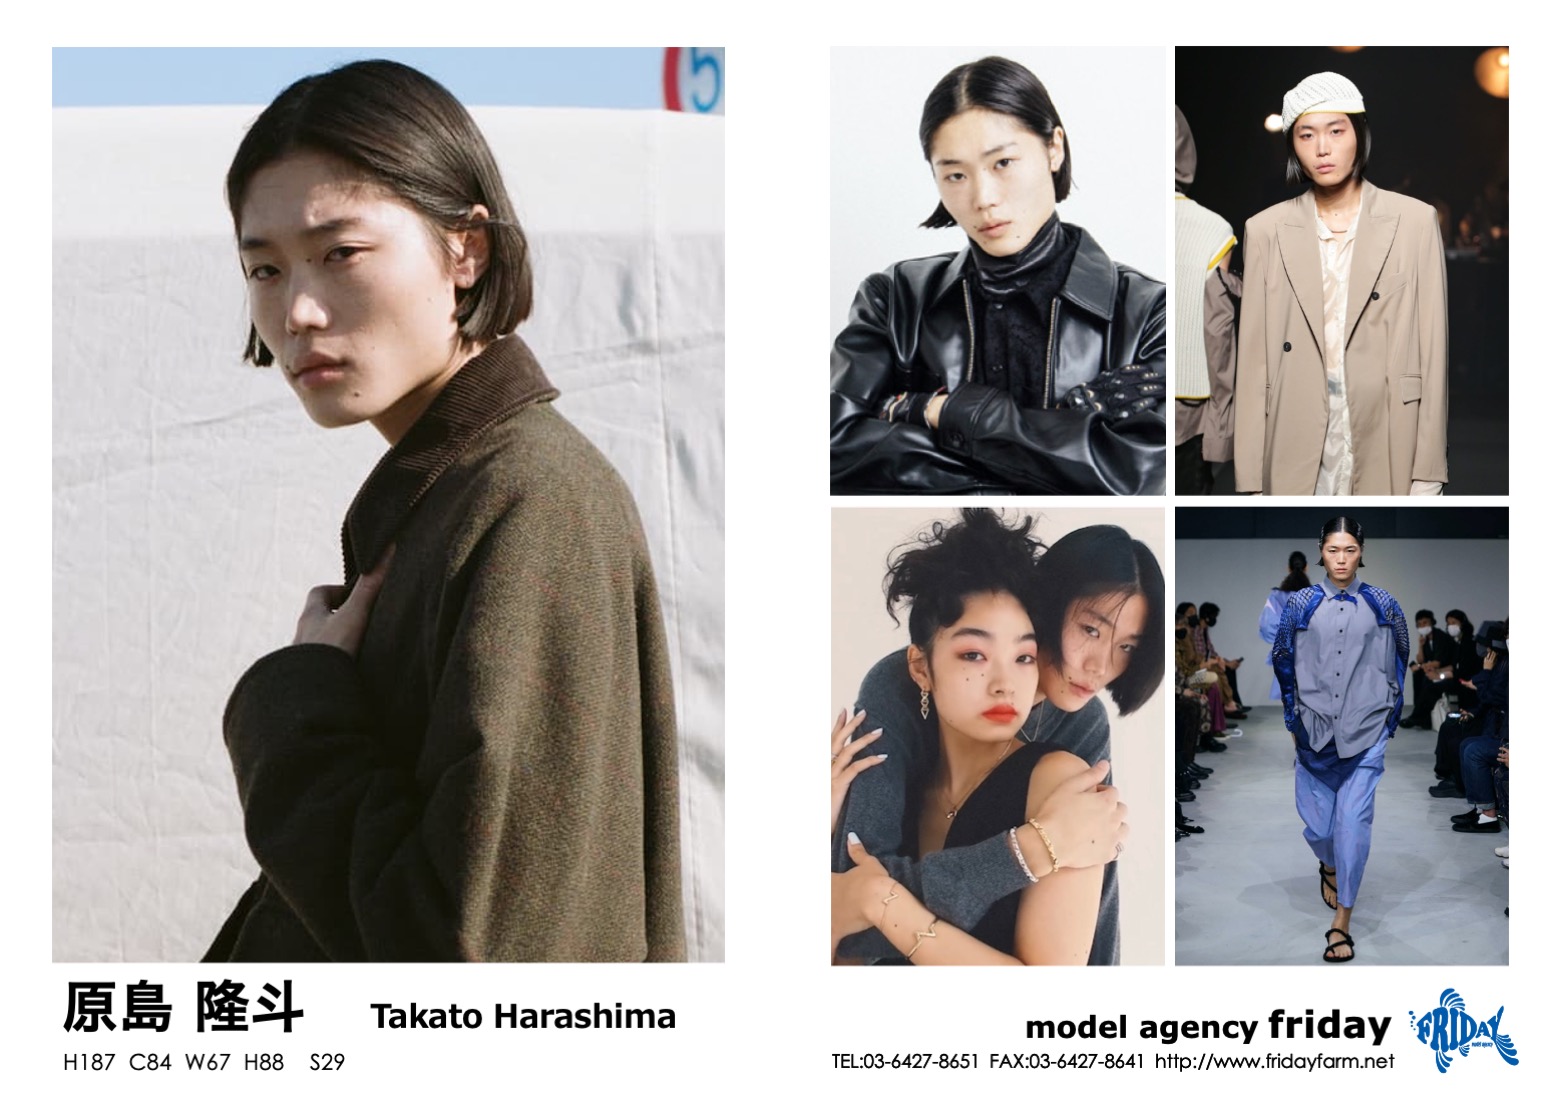 原島 隆斗 - Takato Harashima | model agency friday